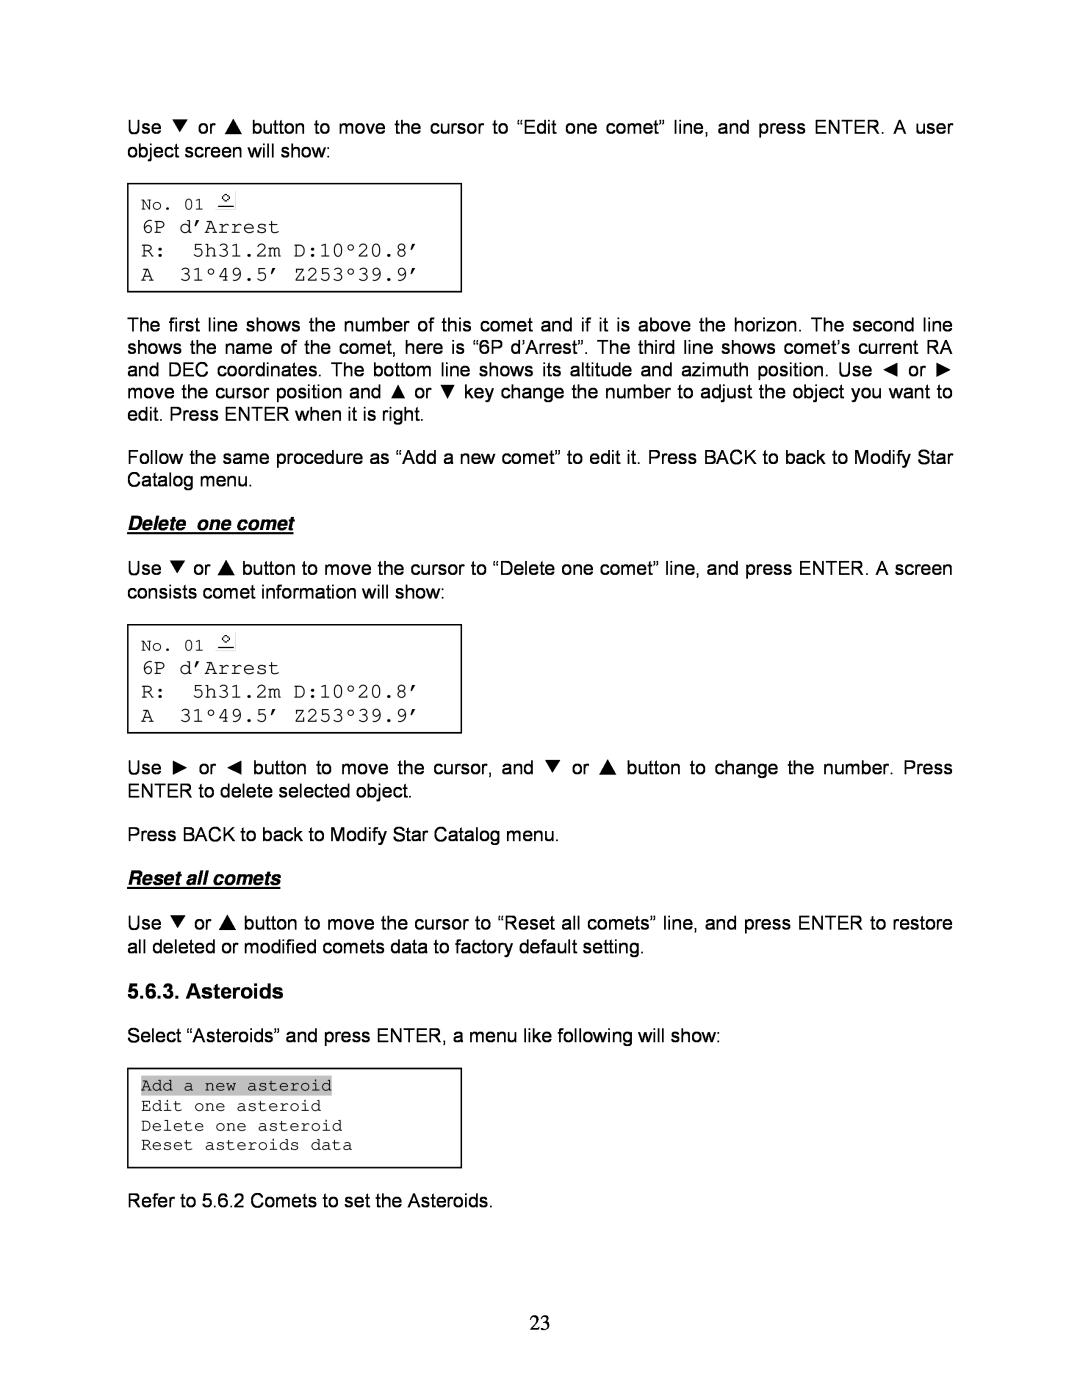 iOptron 8507, 8506 instruction manual 6P d’Arrest, Asteroids 